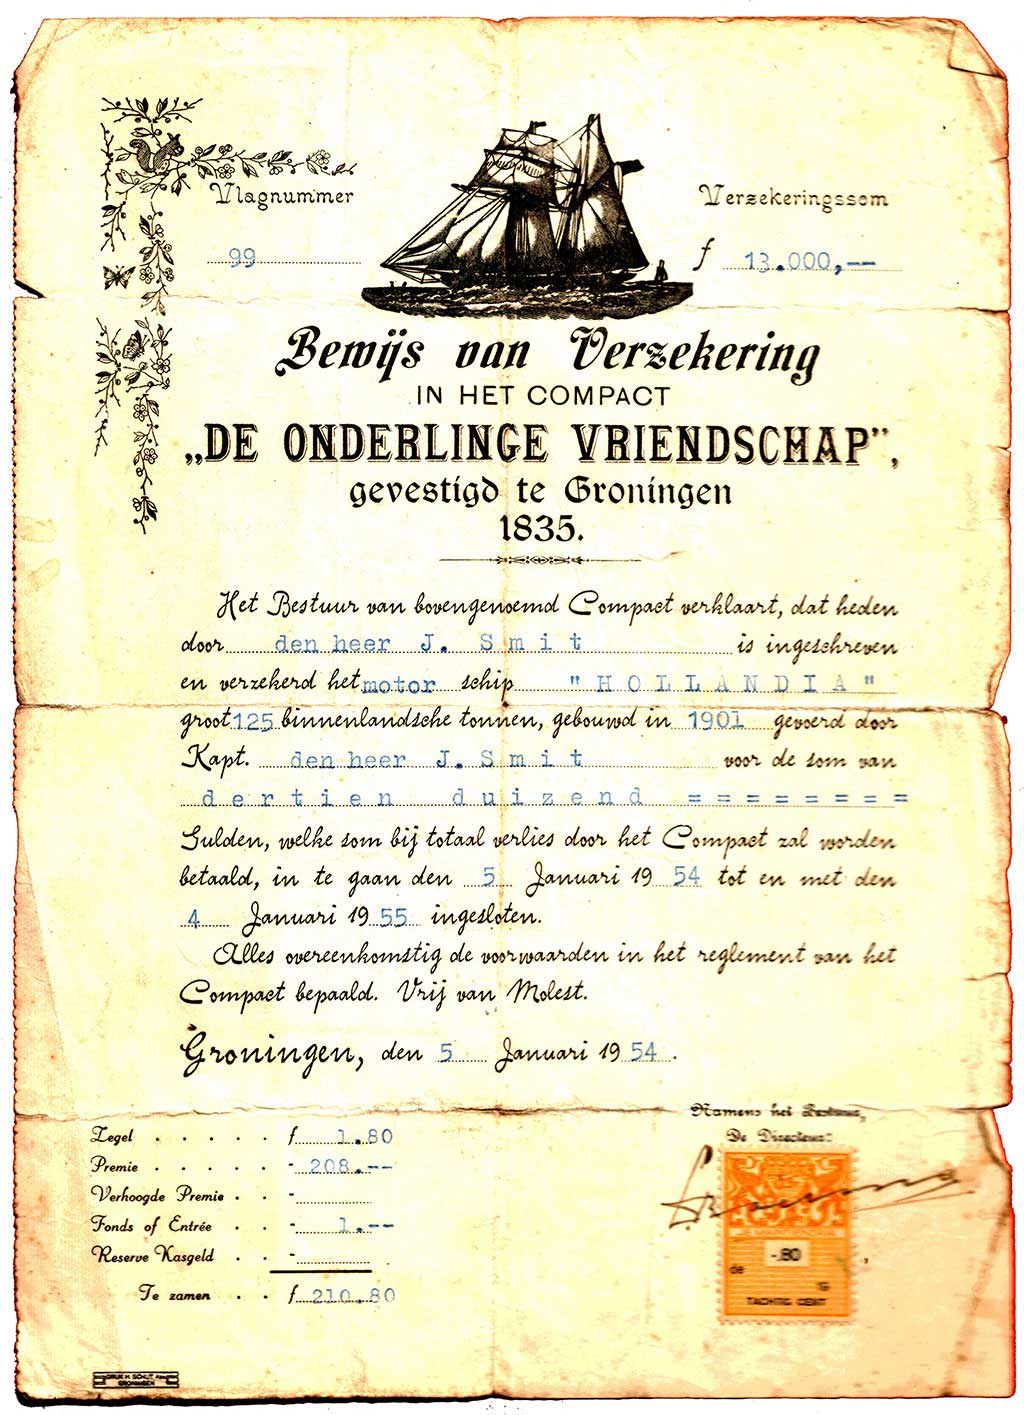 Certificado de seguro de 1954